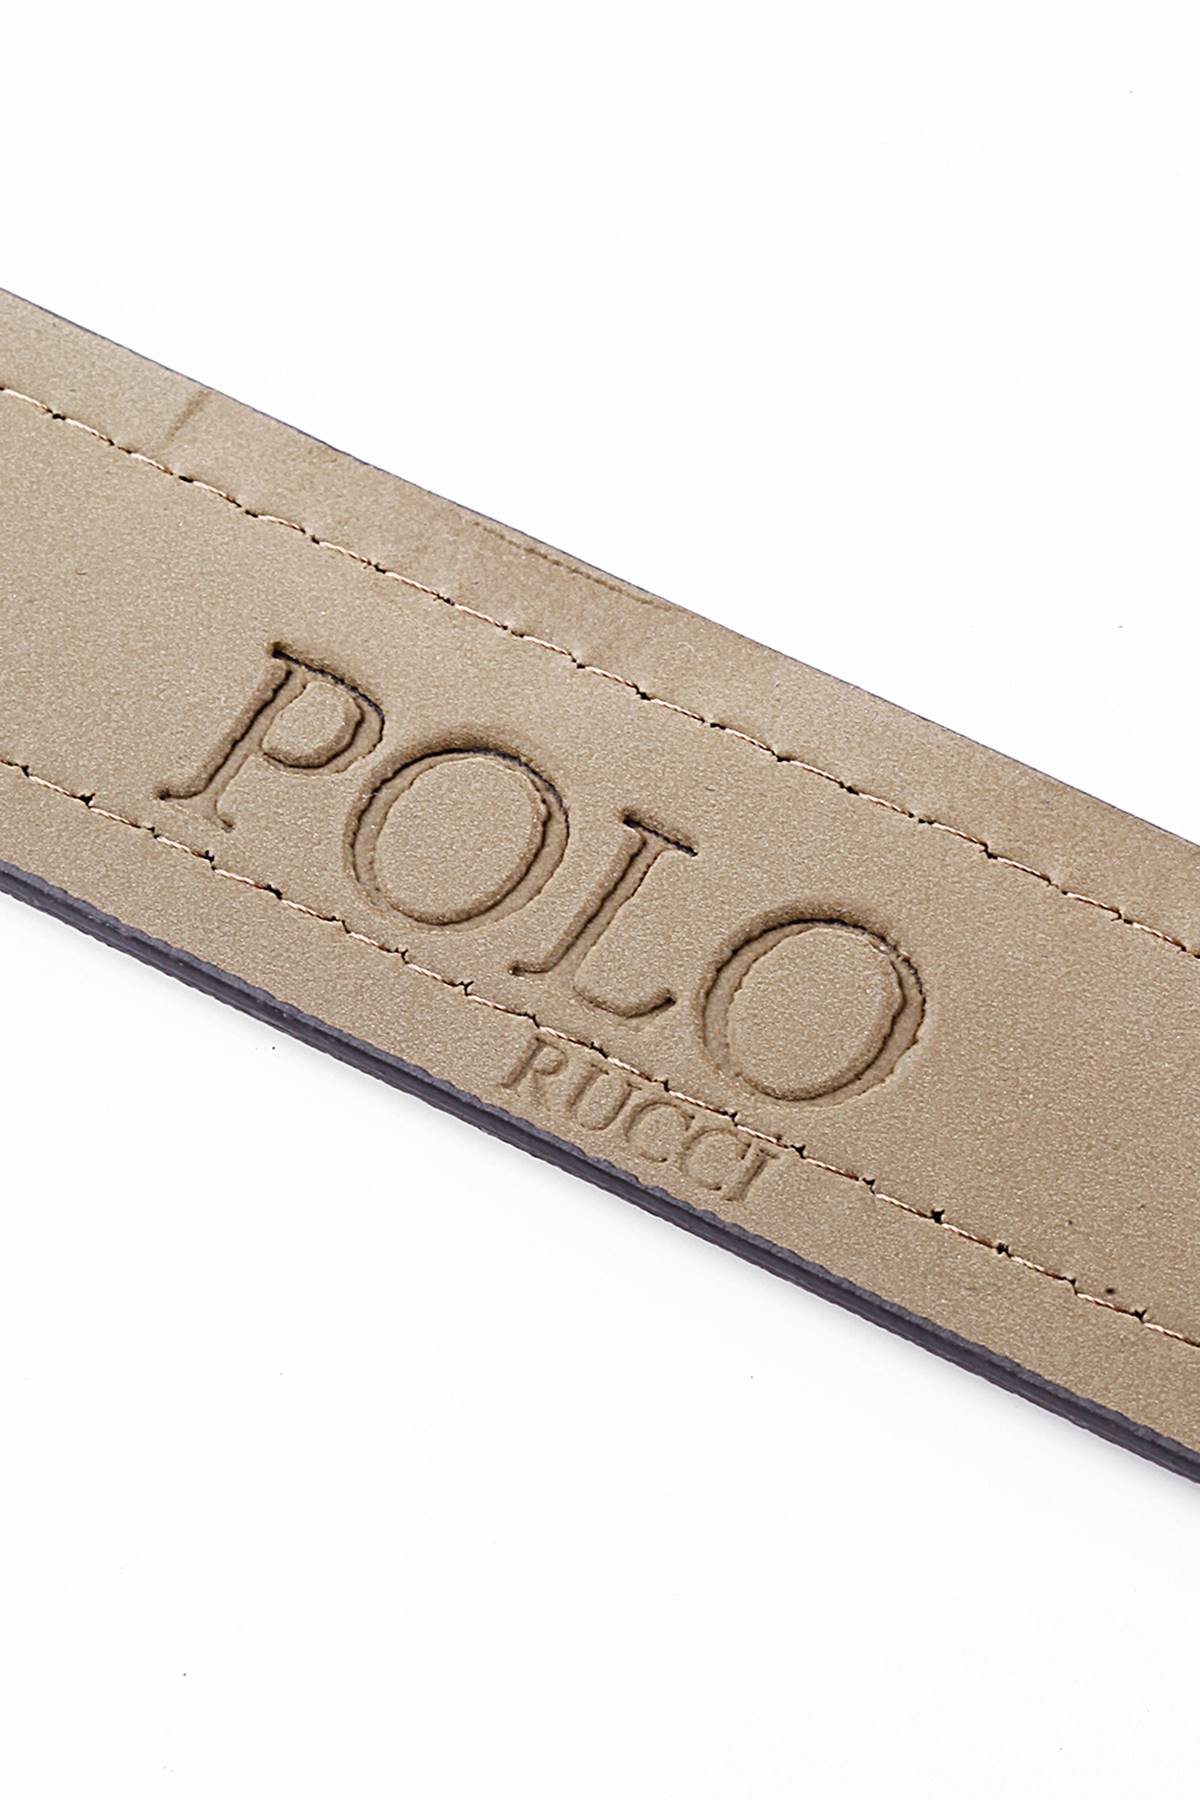 Polo Rucci Erkek Kapıda Ödeme Kişiye Özel Hediye Paketli     KMR-2011-S110